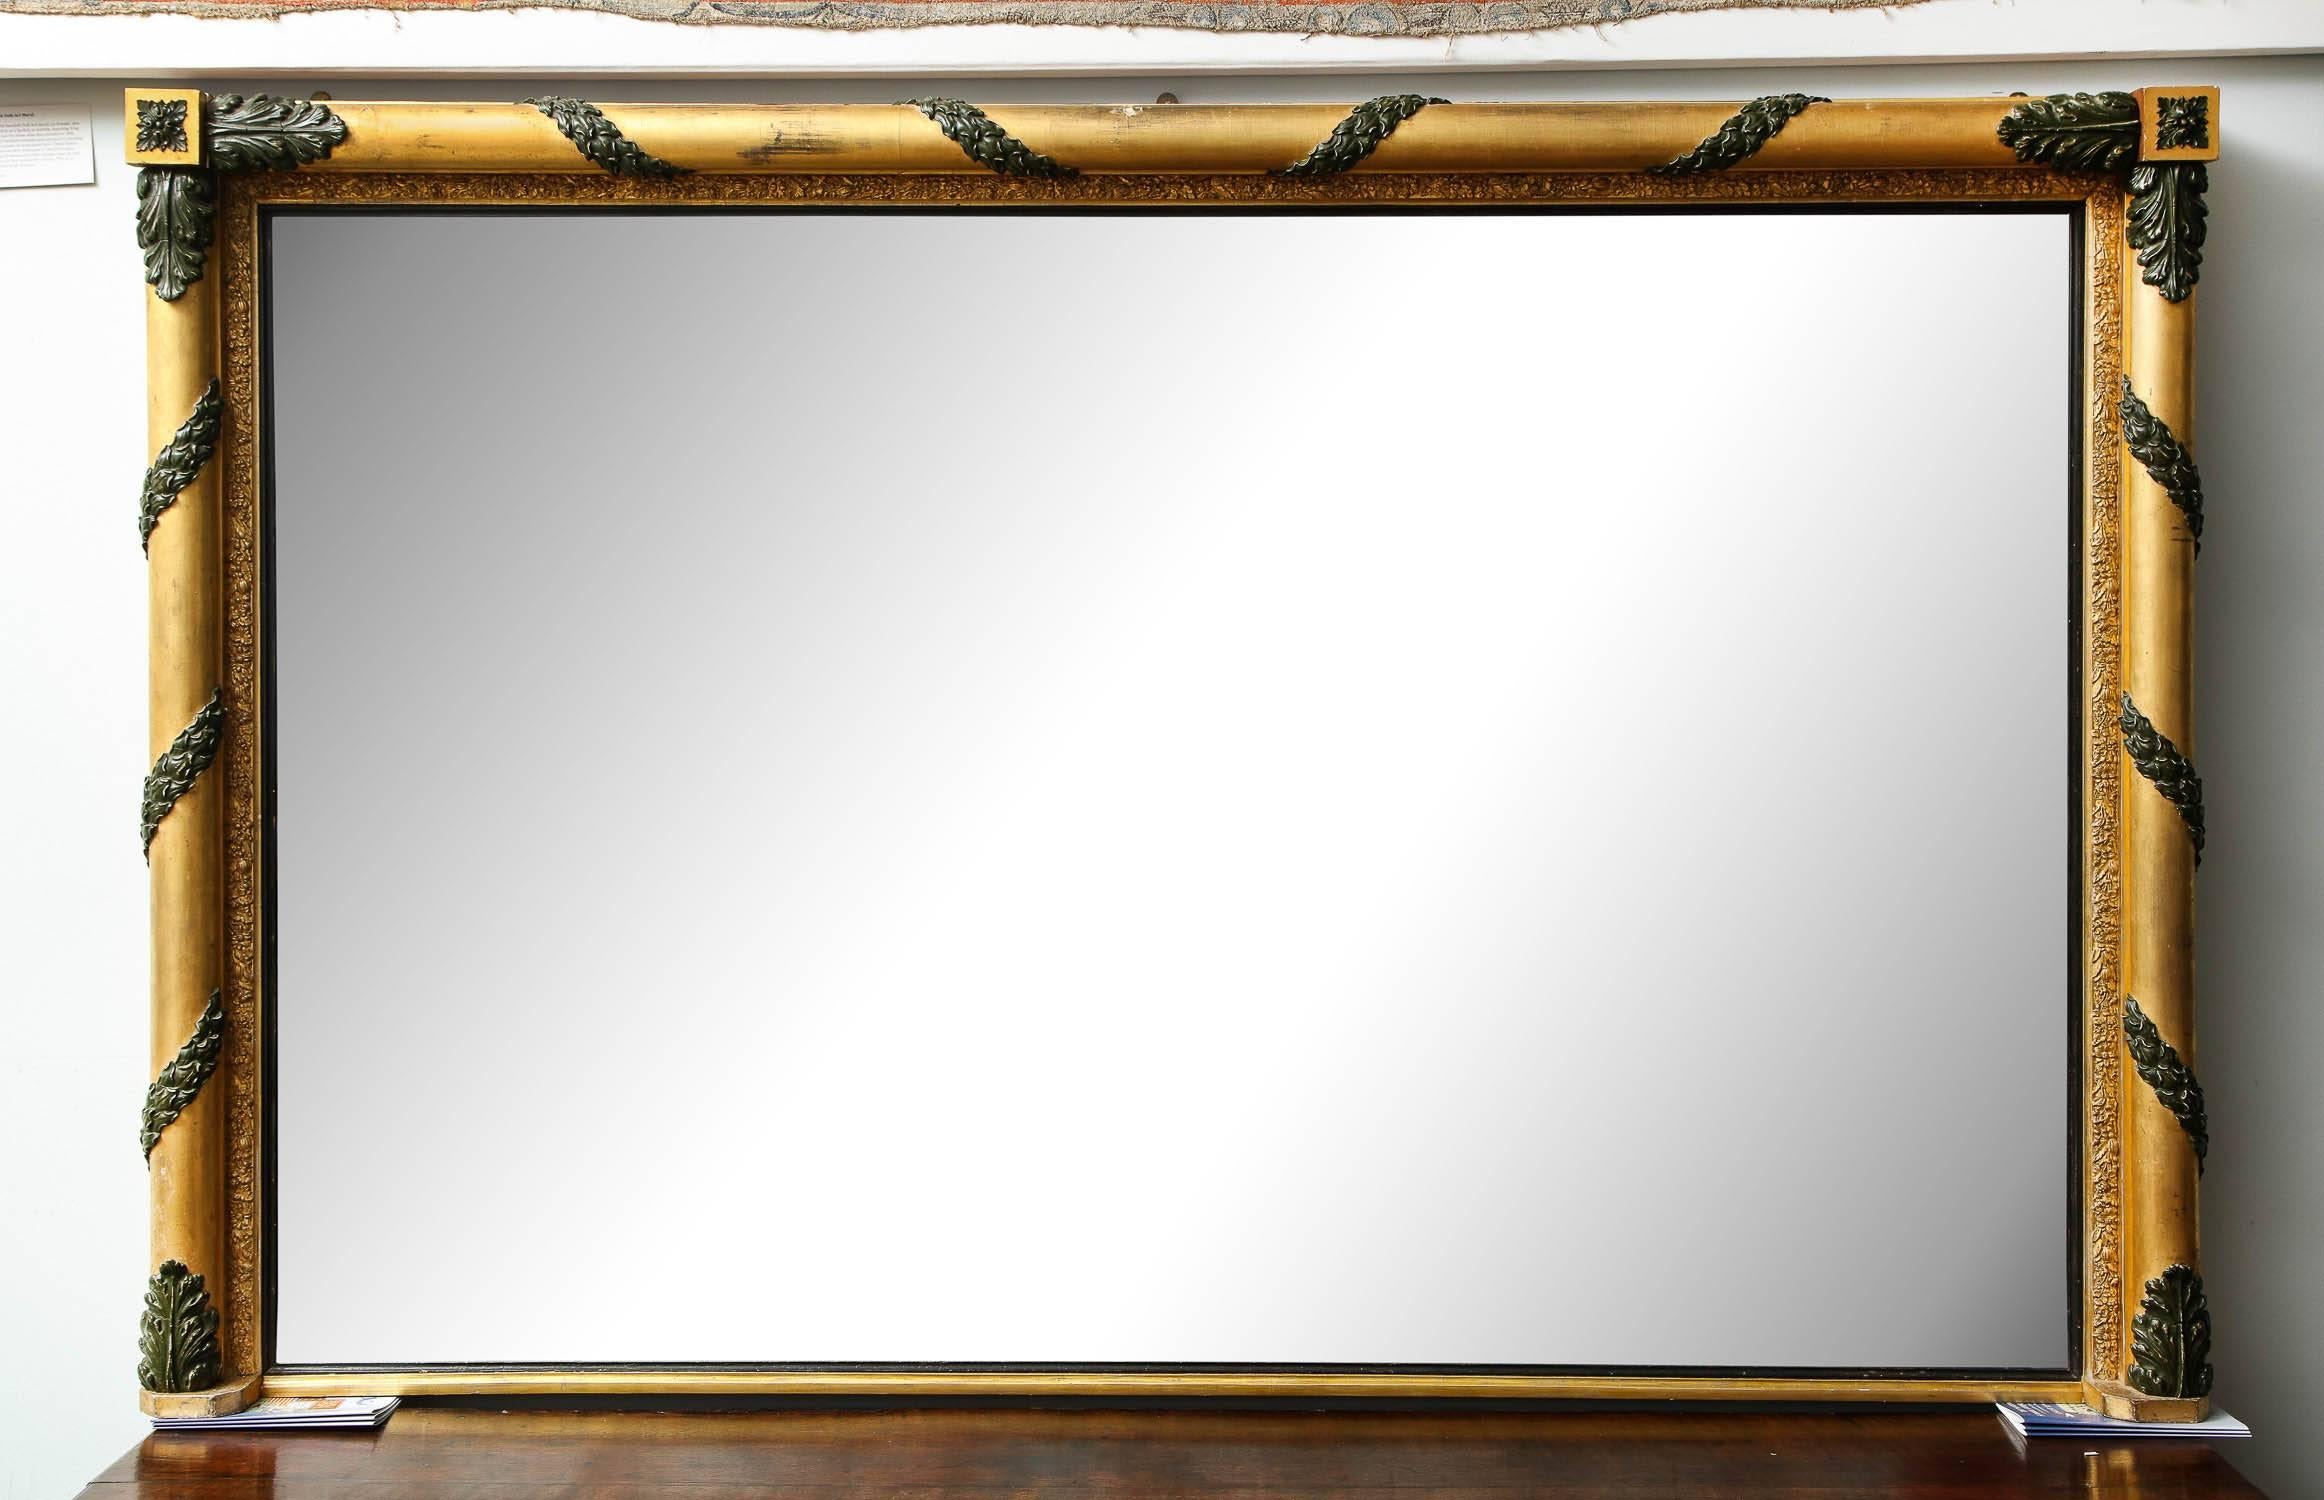 Sehr großer englischer Spiegel aus vergoldetem und bemaltem Holz aus dem frühen 19. Jahrhundert mit geschnitzten Akanthusblättern an den Enden der glatten vergoldeten Säulen, innerer und äußerer Rand mit vergoldeter Kompositionsdekoration, mit